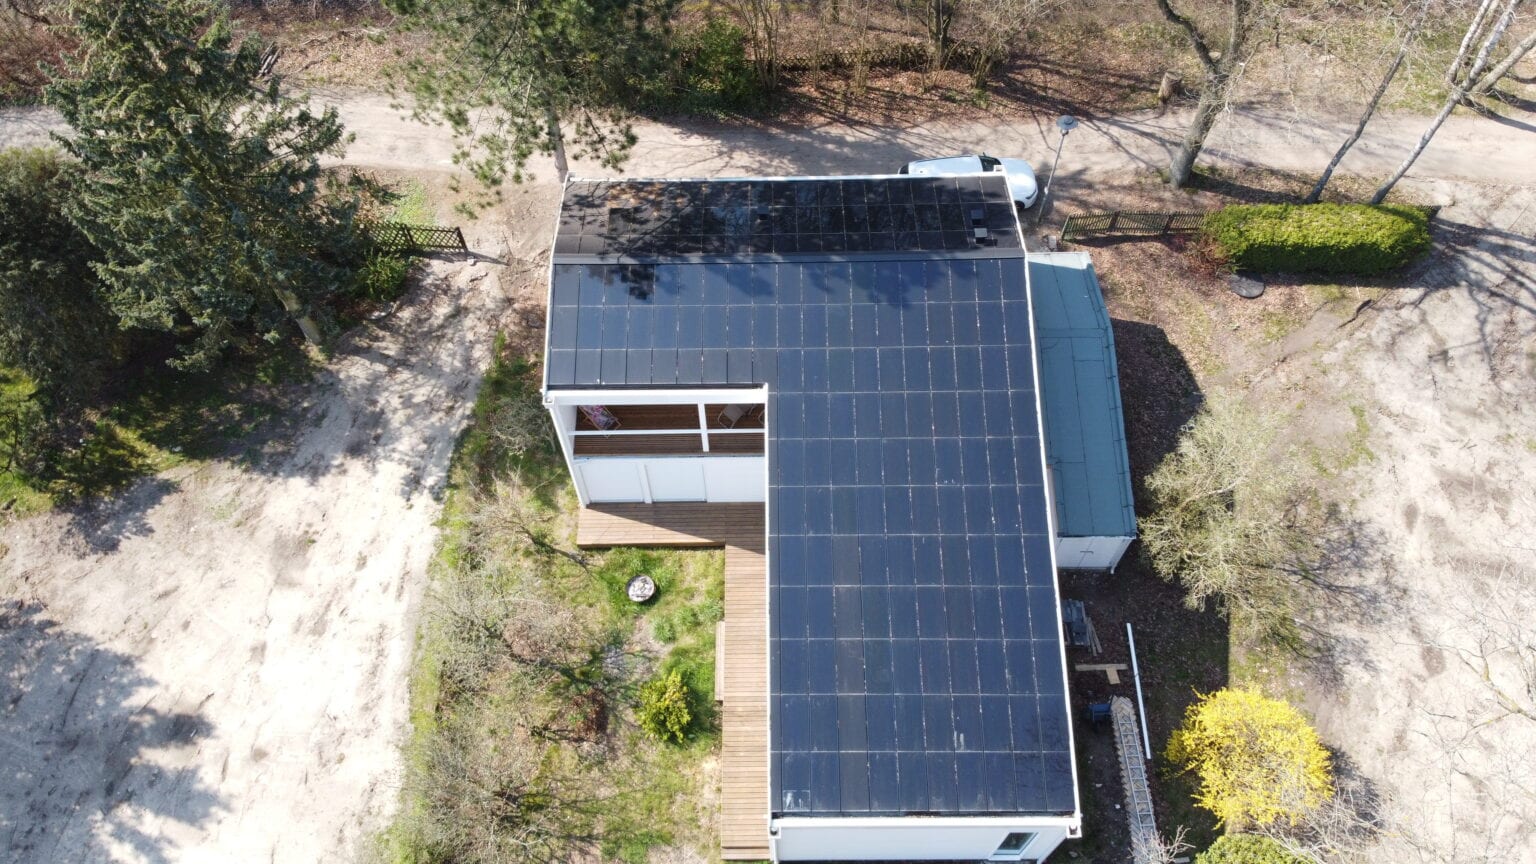 Ennogie-Solardach in Wandlitz: Drohnenaufnahme einheitliche Dachfläche aus Vogelperspektive, Bäume, Sträucher und Terrasse abgebildet